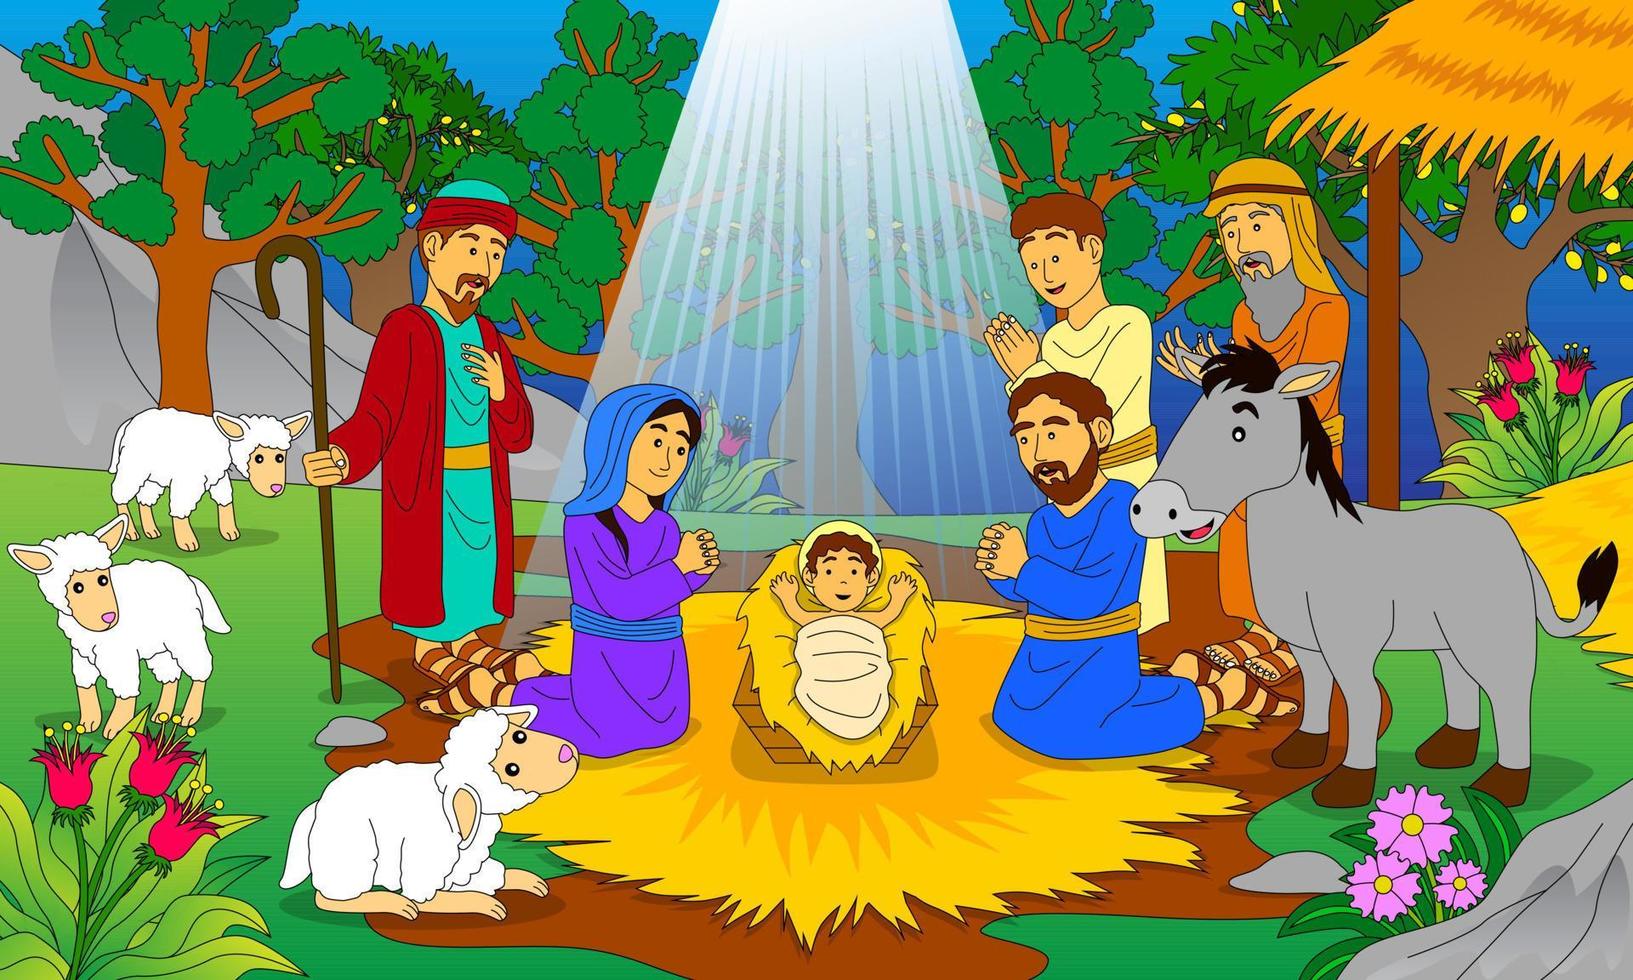 illustration av Jesu födelse, bra för barnbiblar, kristna religiösa böcker, affischer, webbplatser, tryckning och annat vektor